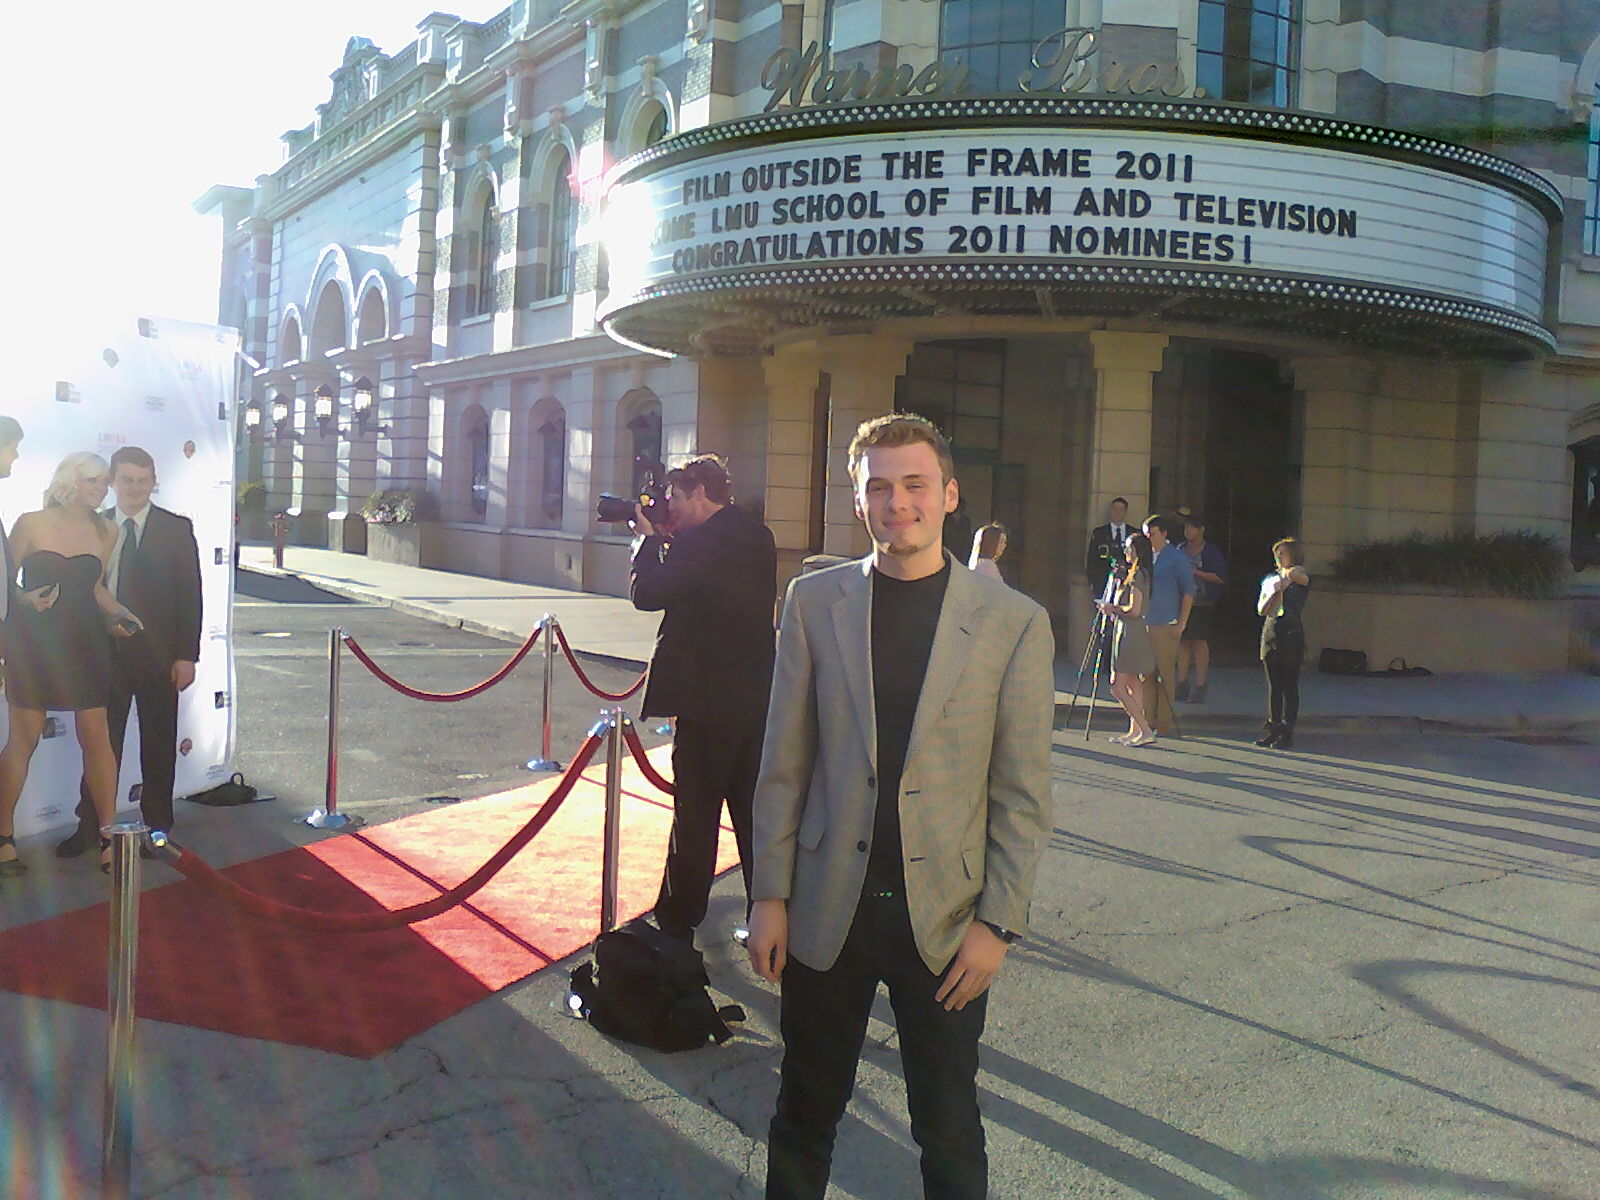 Film Outside the Frame at Warner Bros (2011)